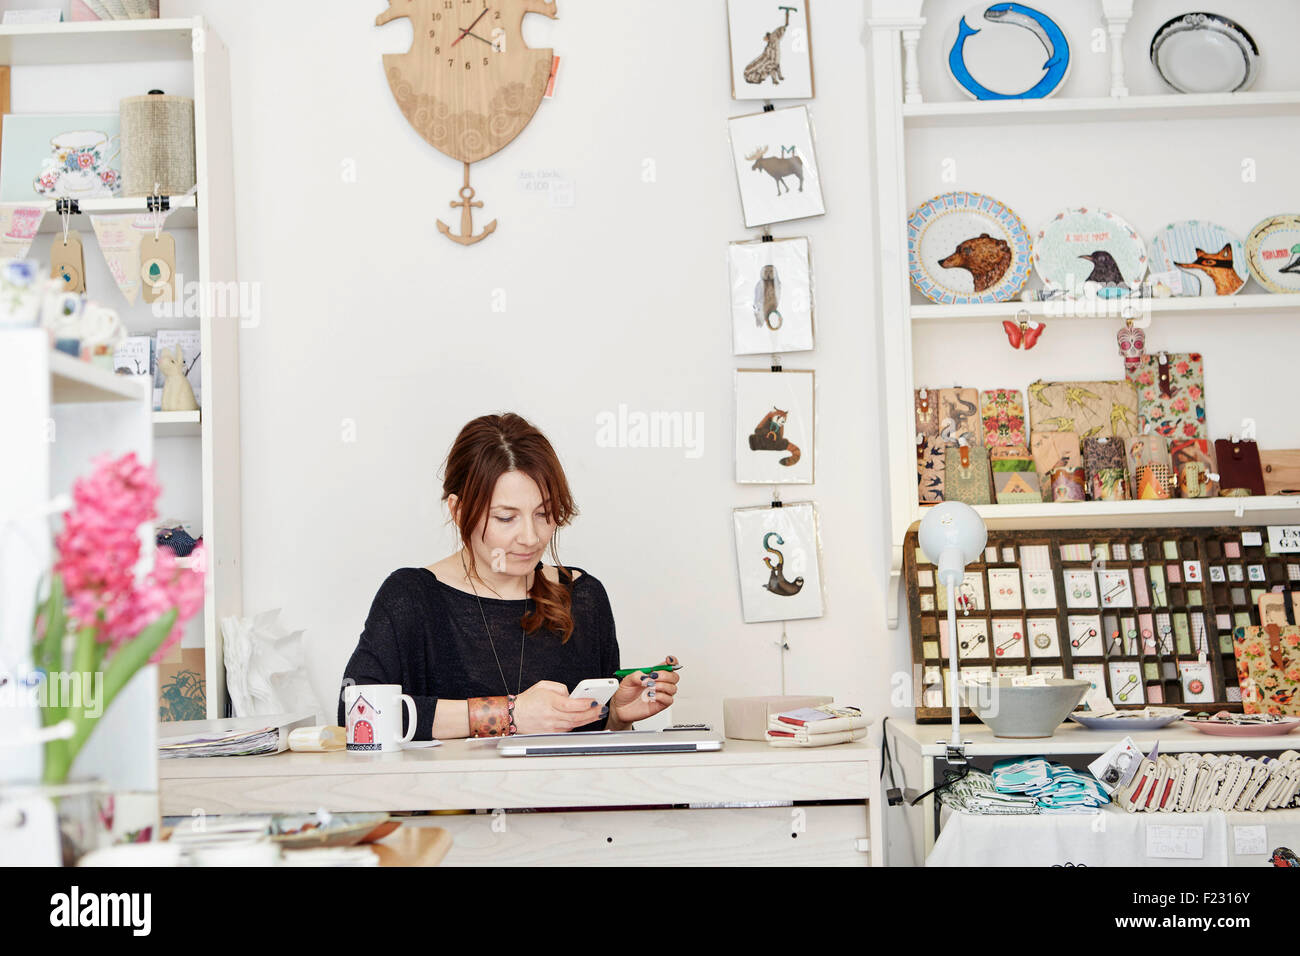 Eine Frau sitzen an einem Schreibtisch in einem kleinen Souvenir-Shop, den Papierkram zu tun, die Geschäftsführung, mit einem Laptop und einem Smartphone. Stockfoto